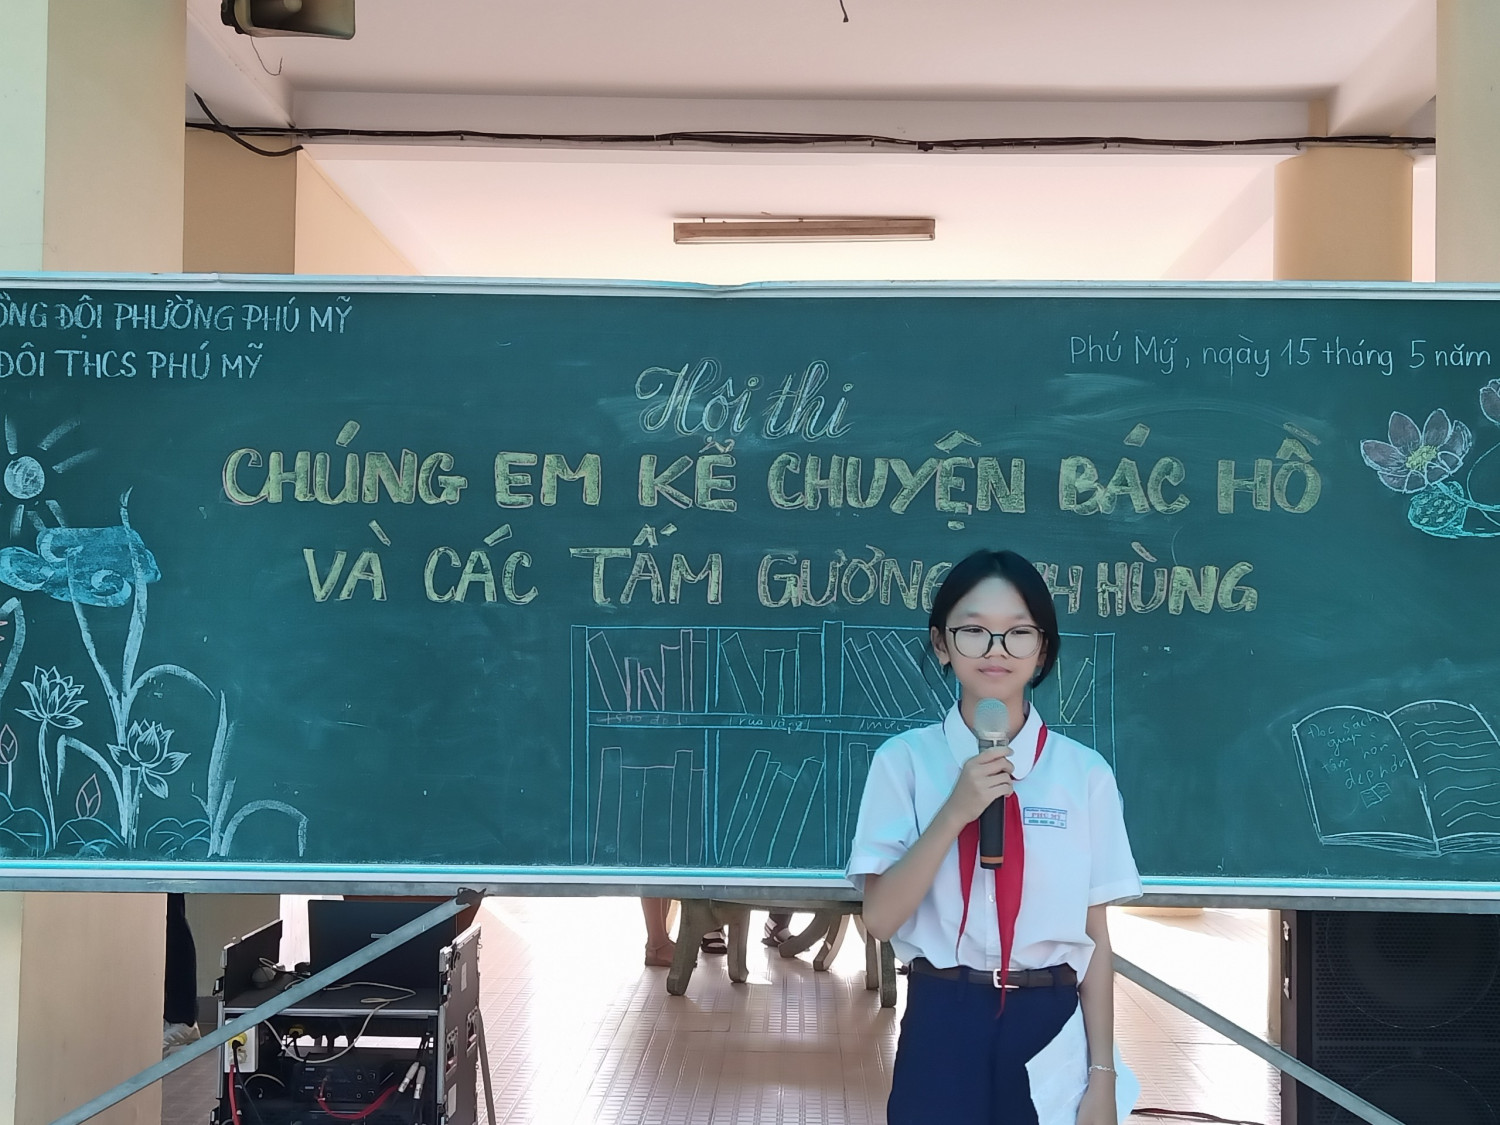 Trường THCS Phú Mỹ tổ chức Hội thi "Chúng em kể chuyện về Bác Hồ và các tấm gương anh hùng"